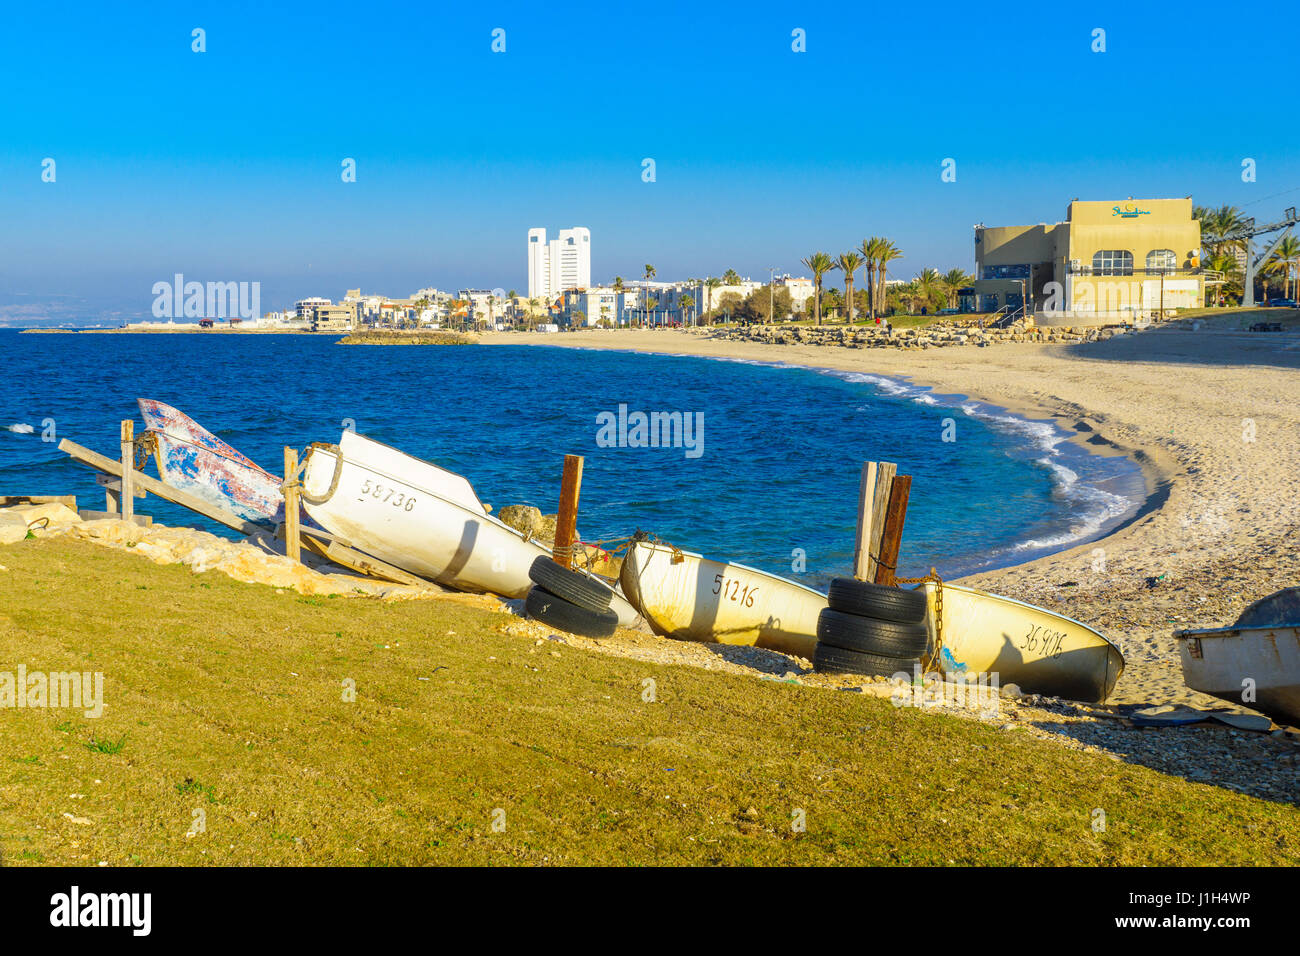 Haïfa, Israël - février 05, 2017 : Vue de la côte et Bat-Galim Quartier, avec des bateaux et des visiteurs, à Haïfa, Israël Banque D'Images